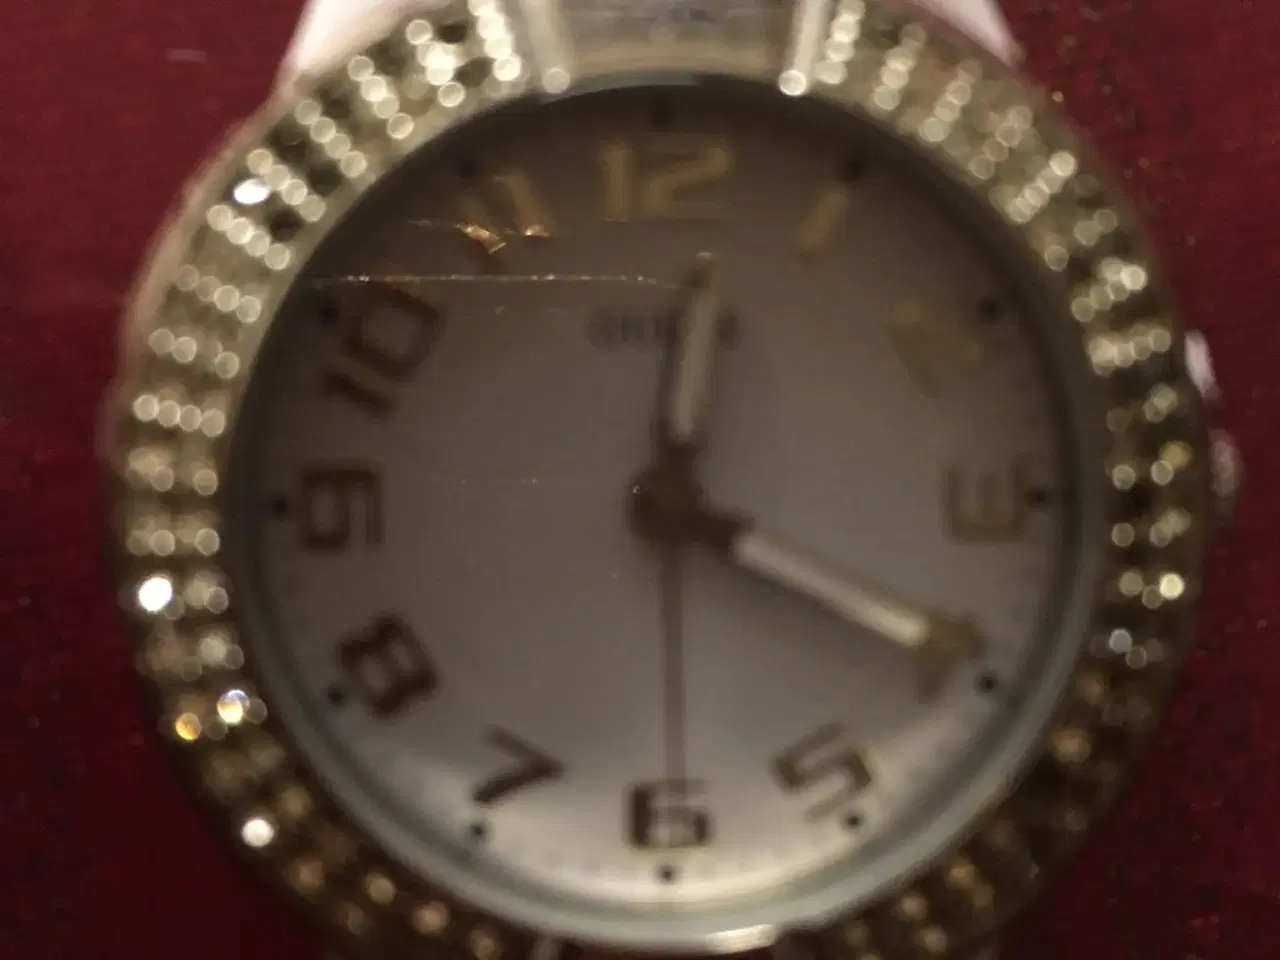 Billede 3 - GUESS ur til salg